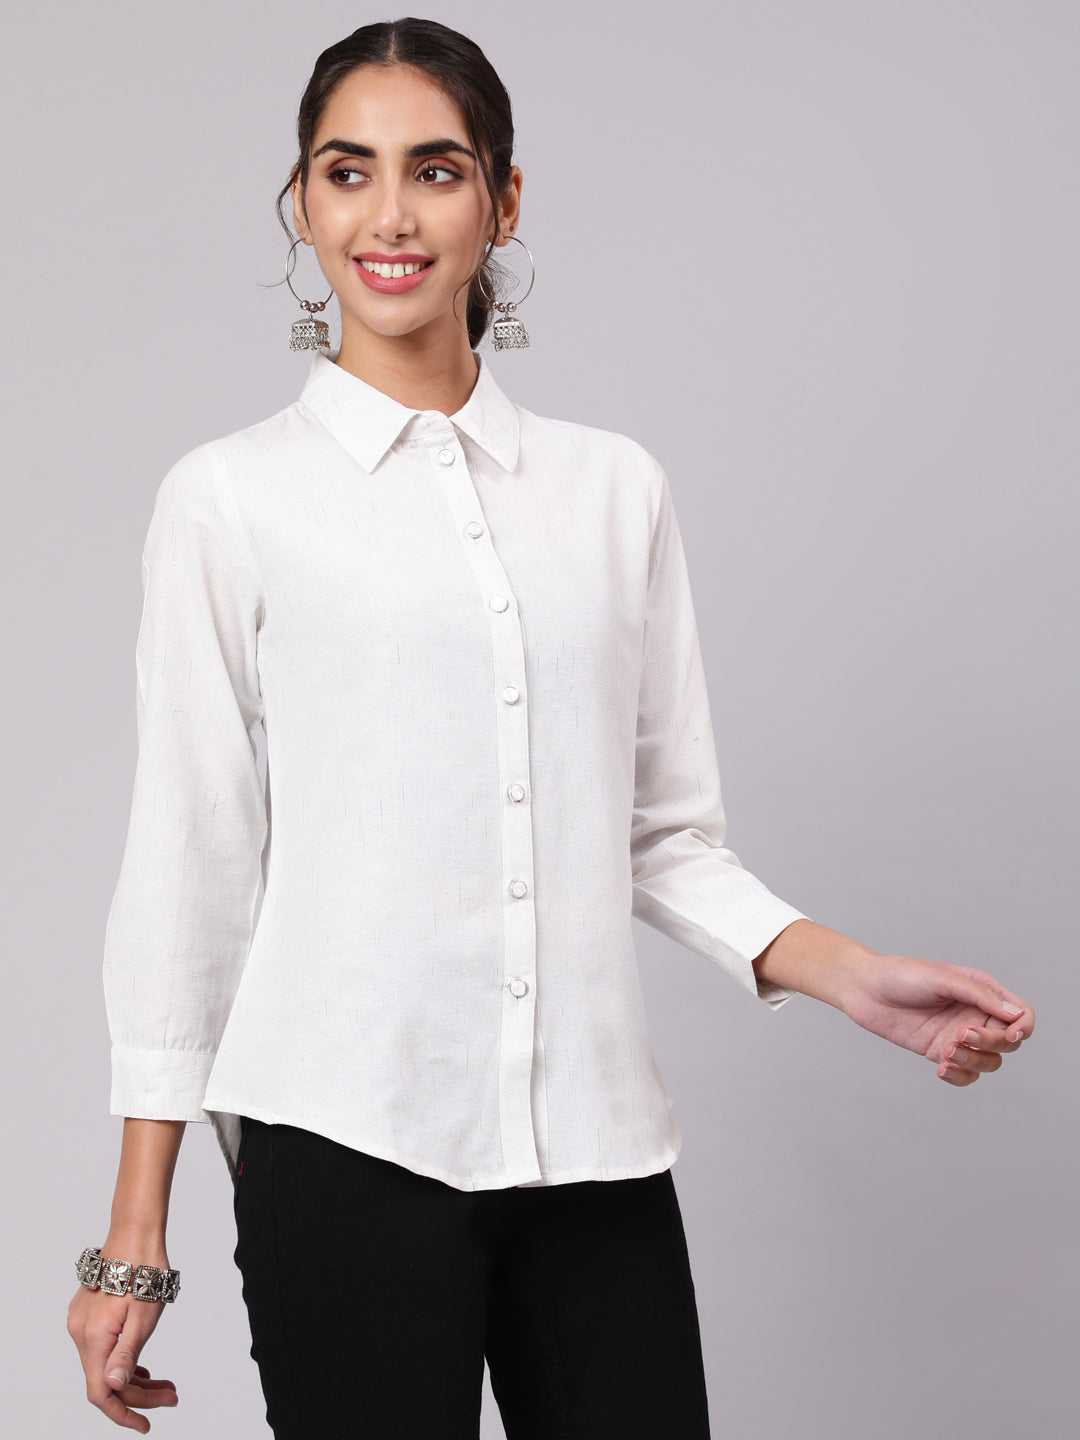 White Cotton Collar Neck Shirt Top